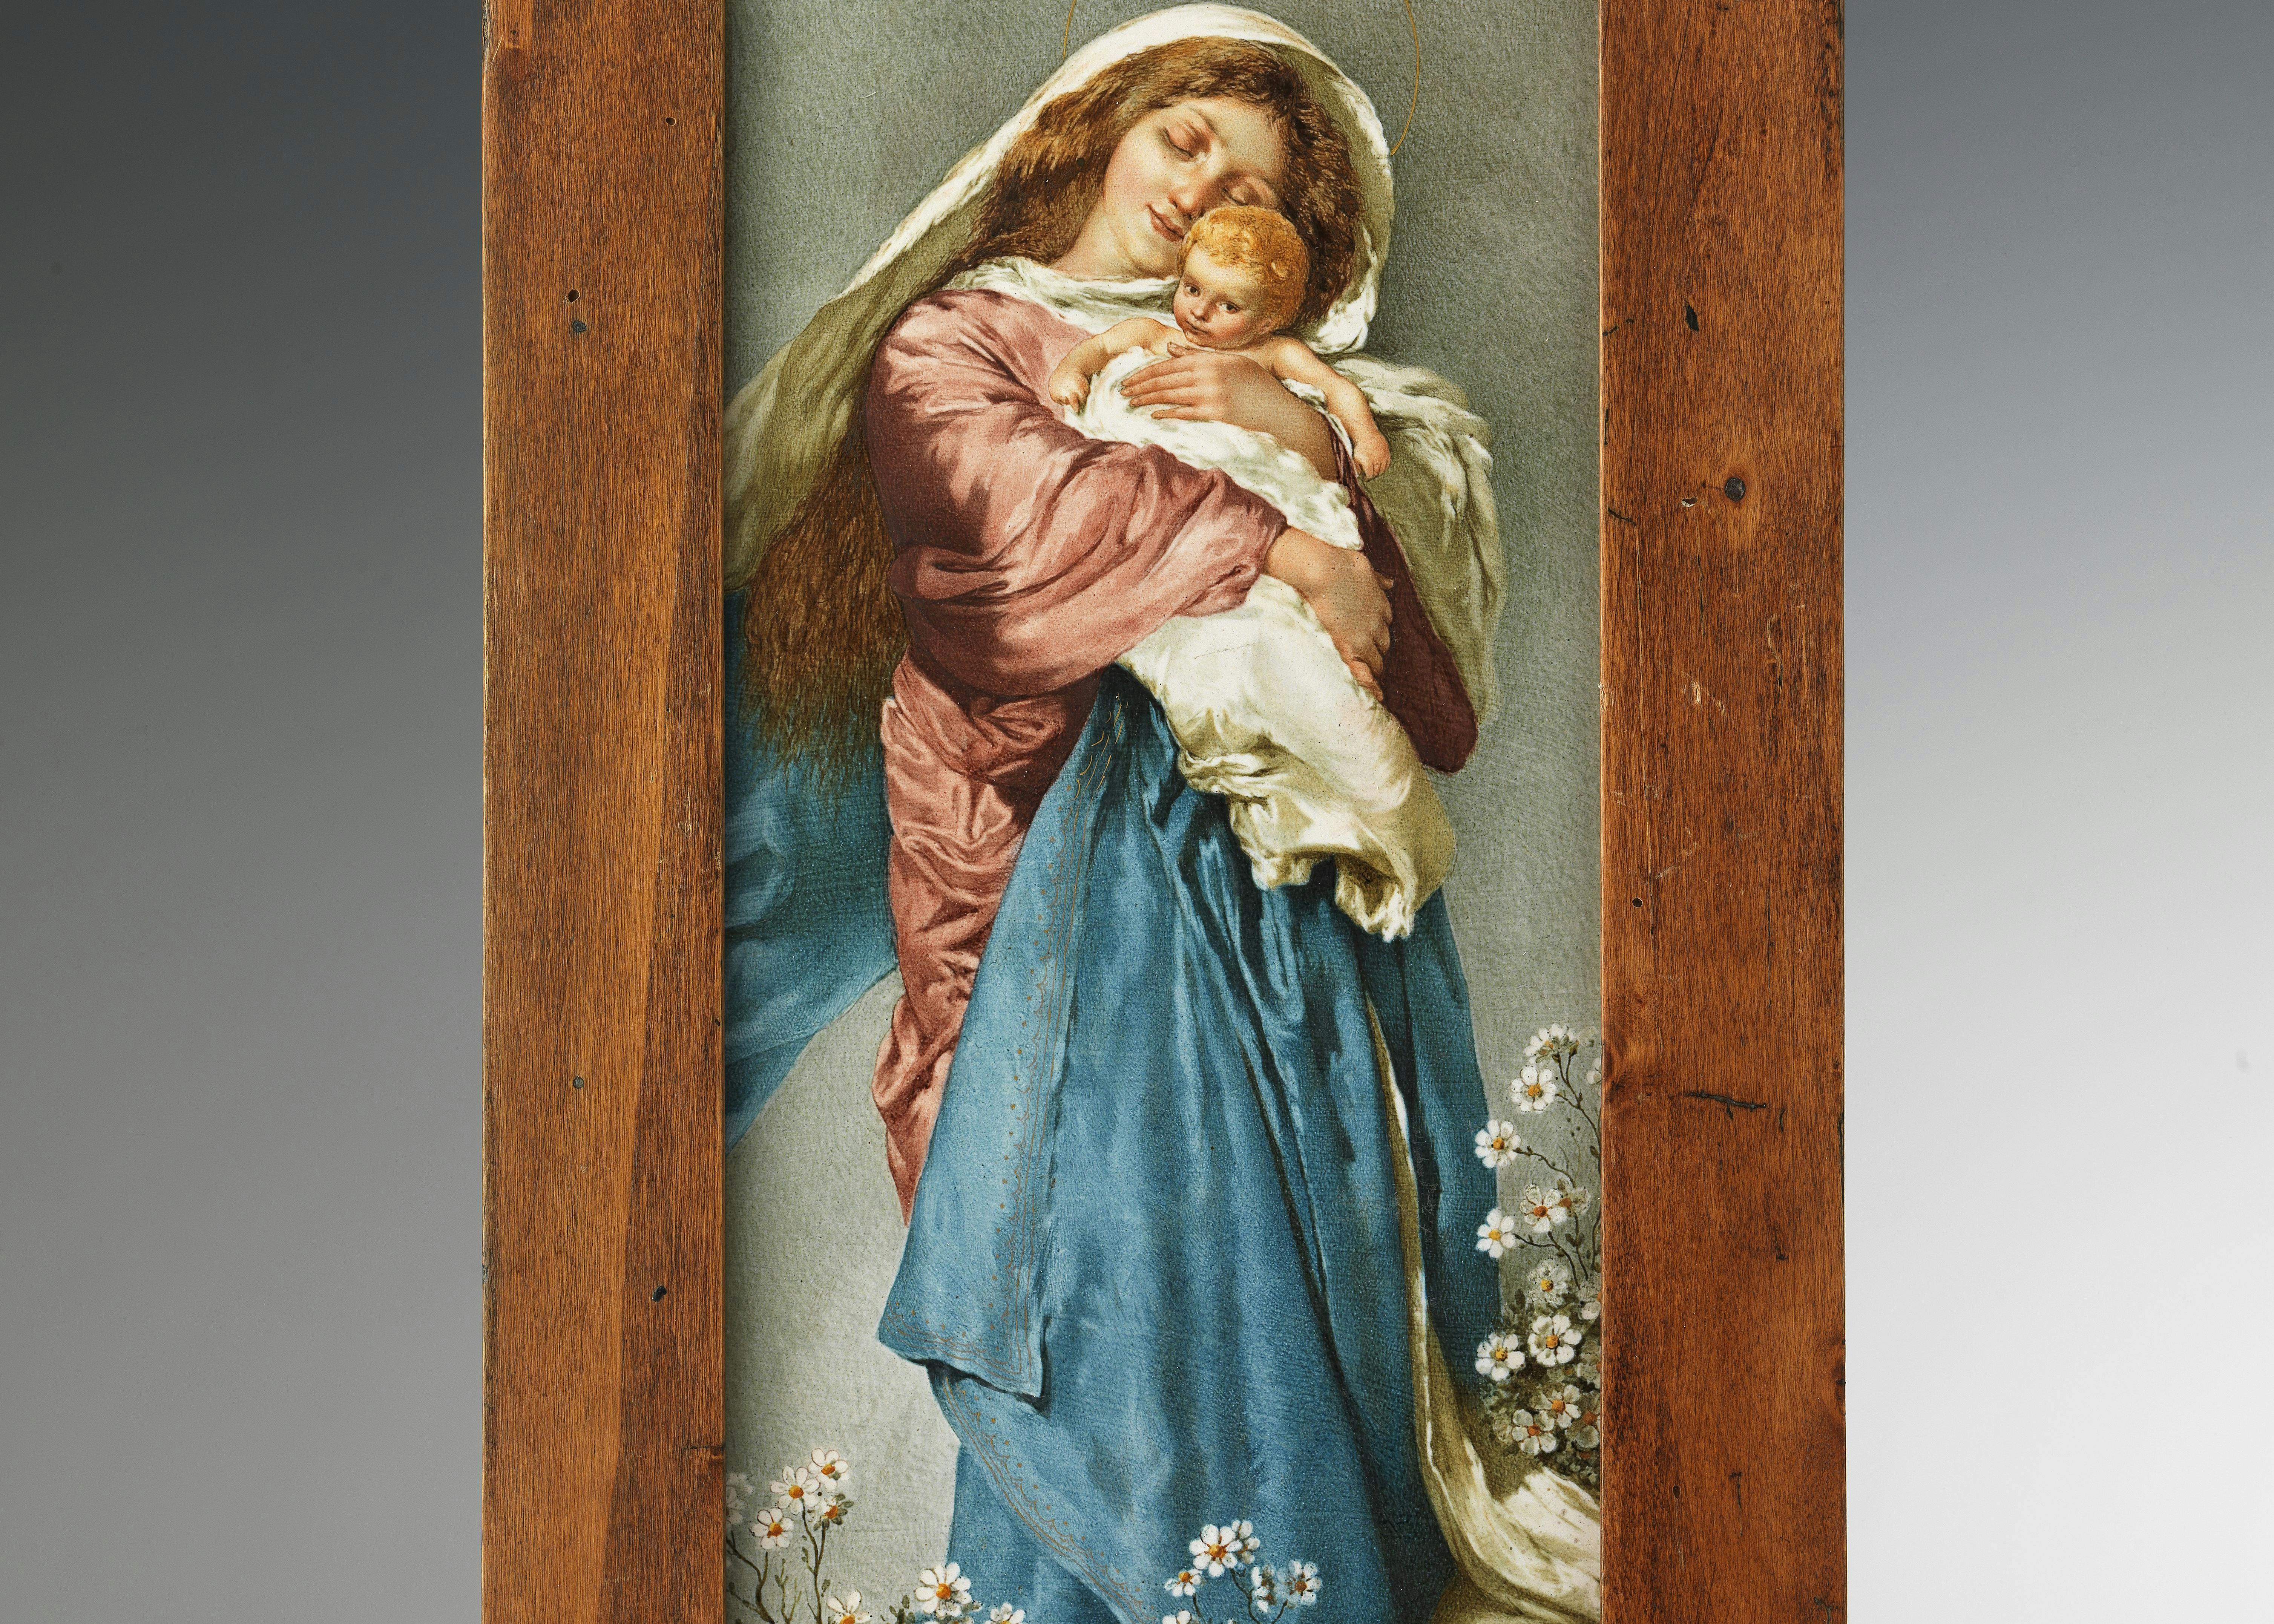 La lastra rappresenta una Madonna con biti rosa e azzurri che stringe al petto il bambino